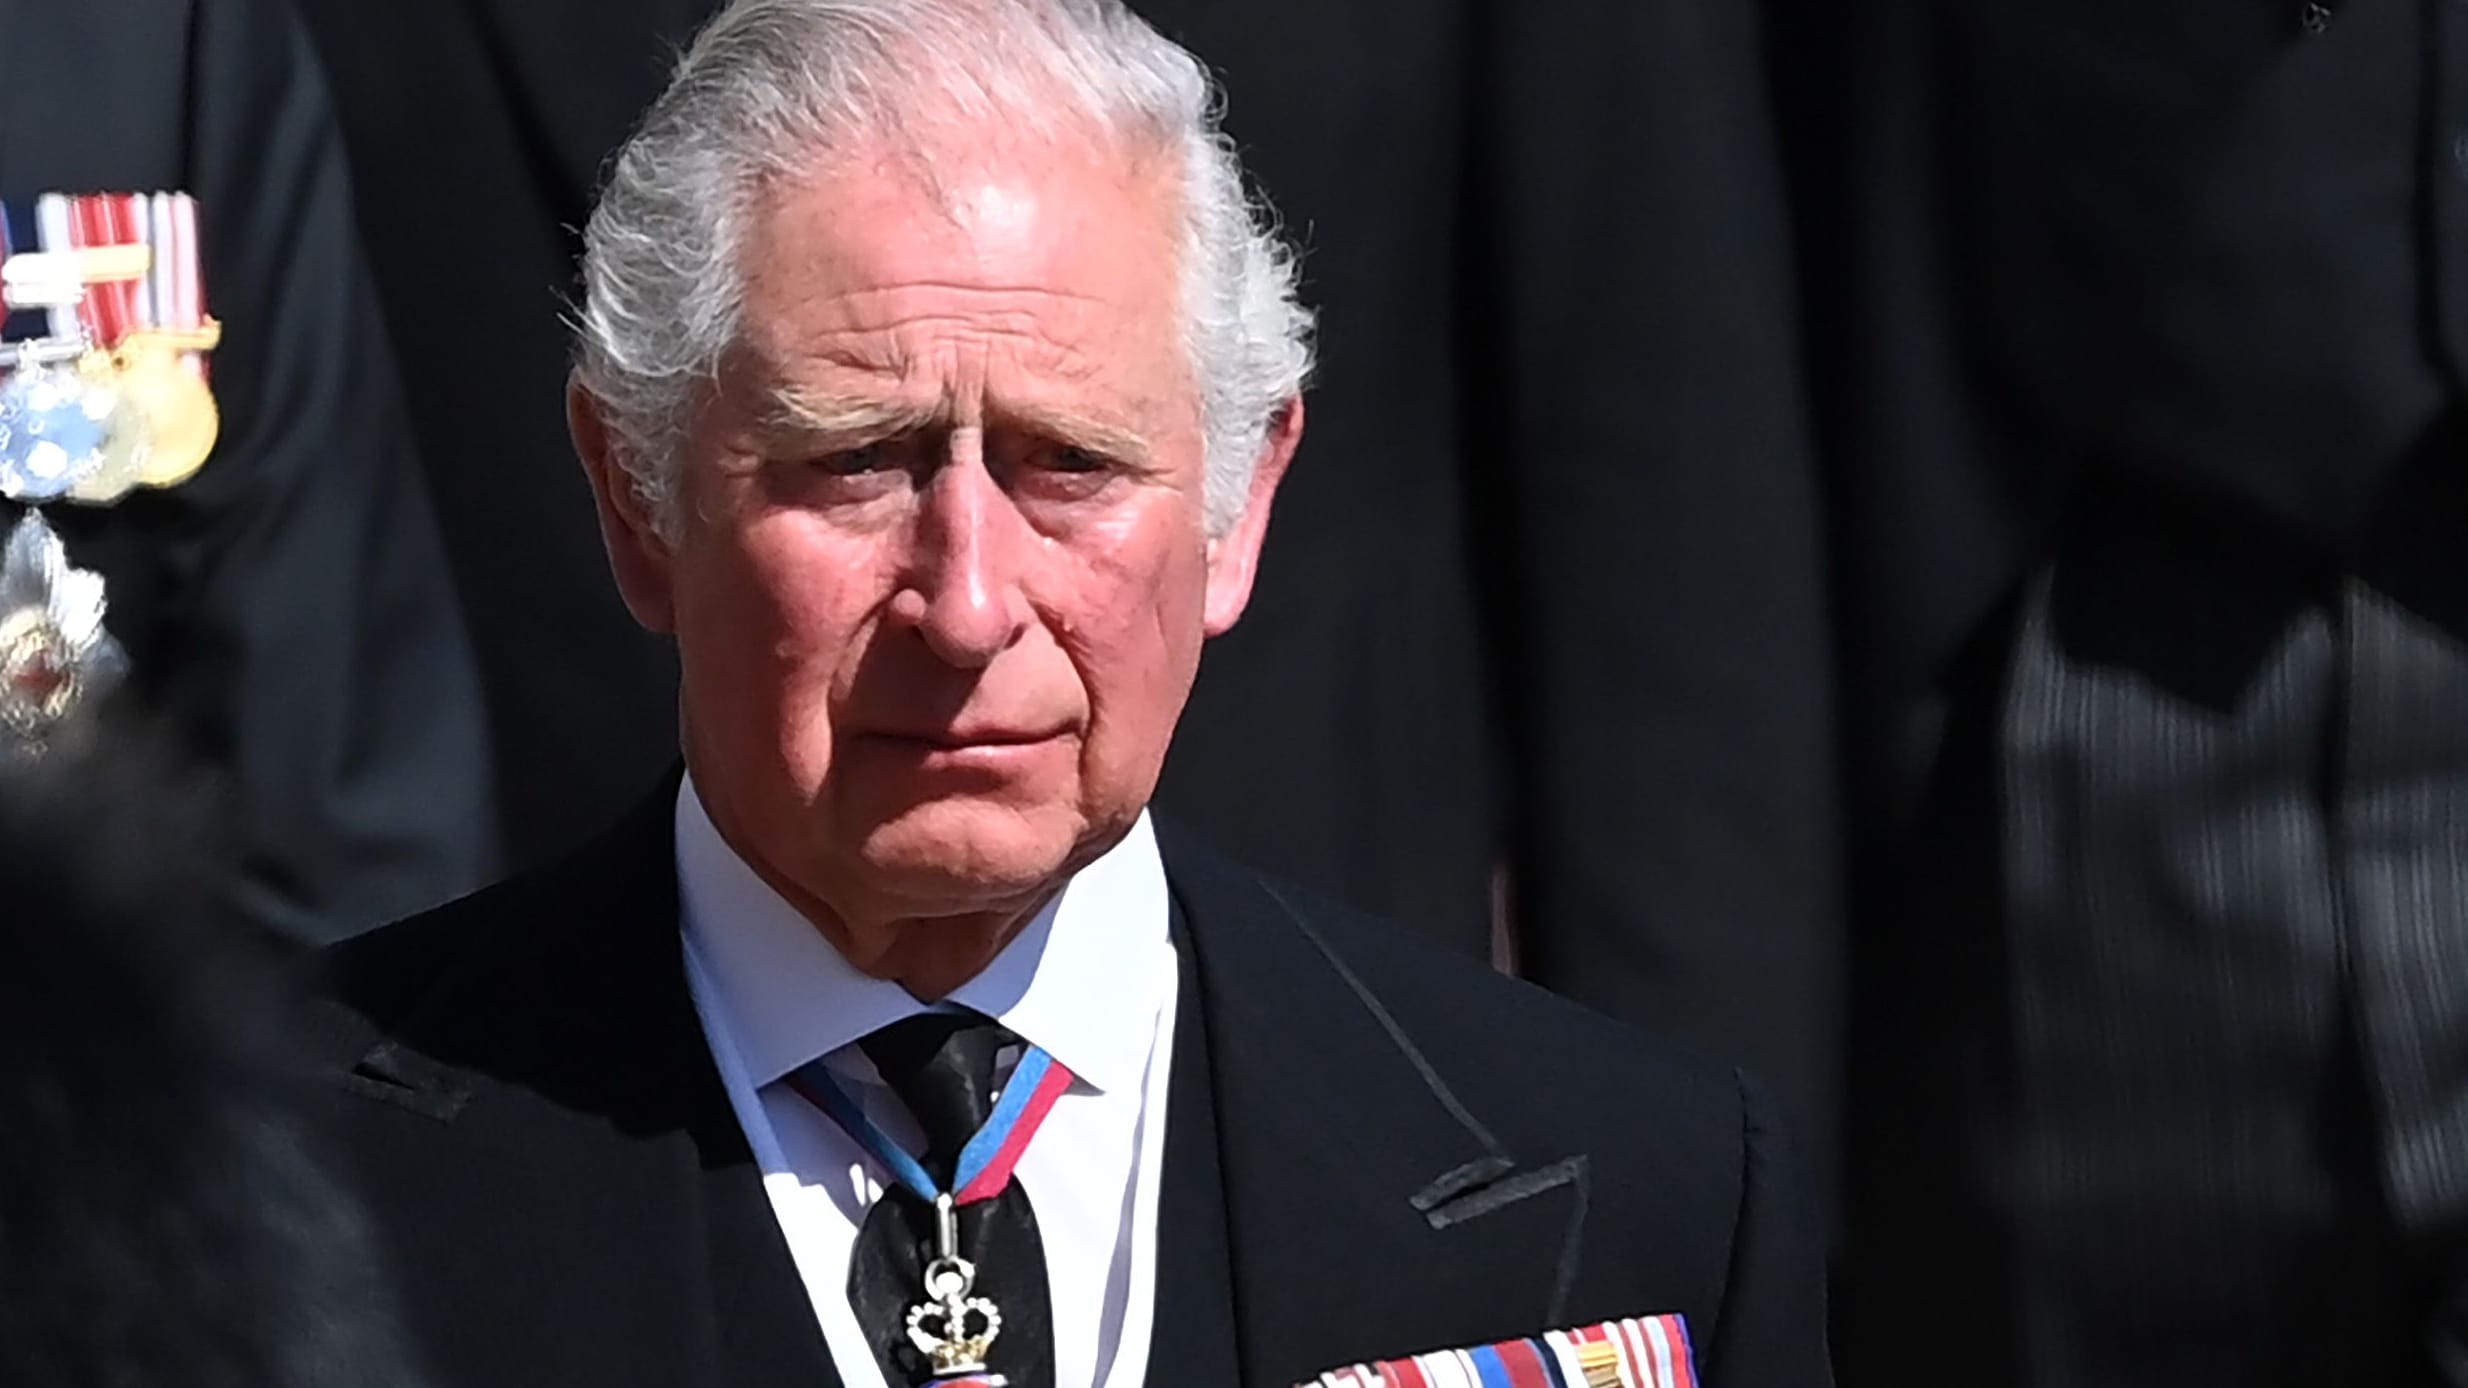 König Charles III.: Fans und Stars reagieren auf seine Krebsdiagnose